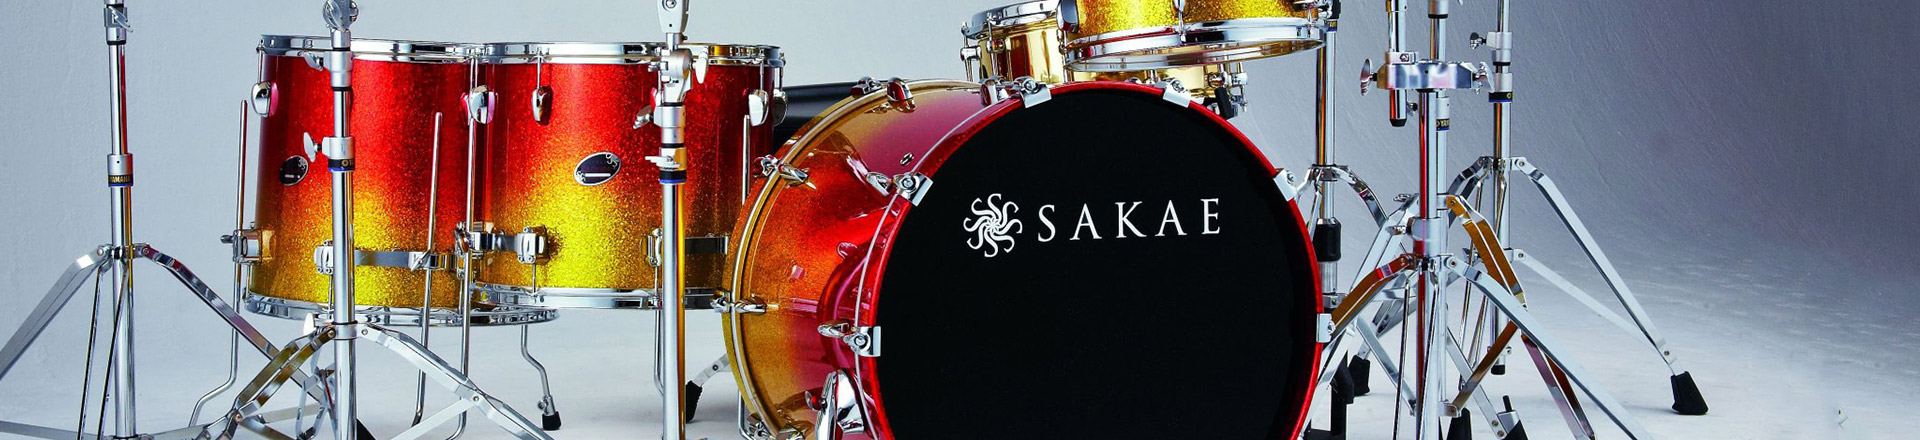 Firma Sakae zawiesza działalność z powodu problemów finansowych